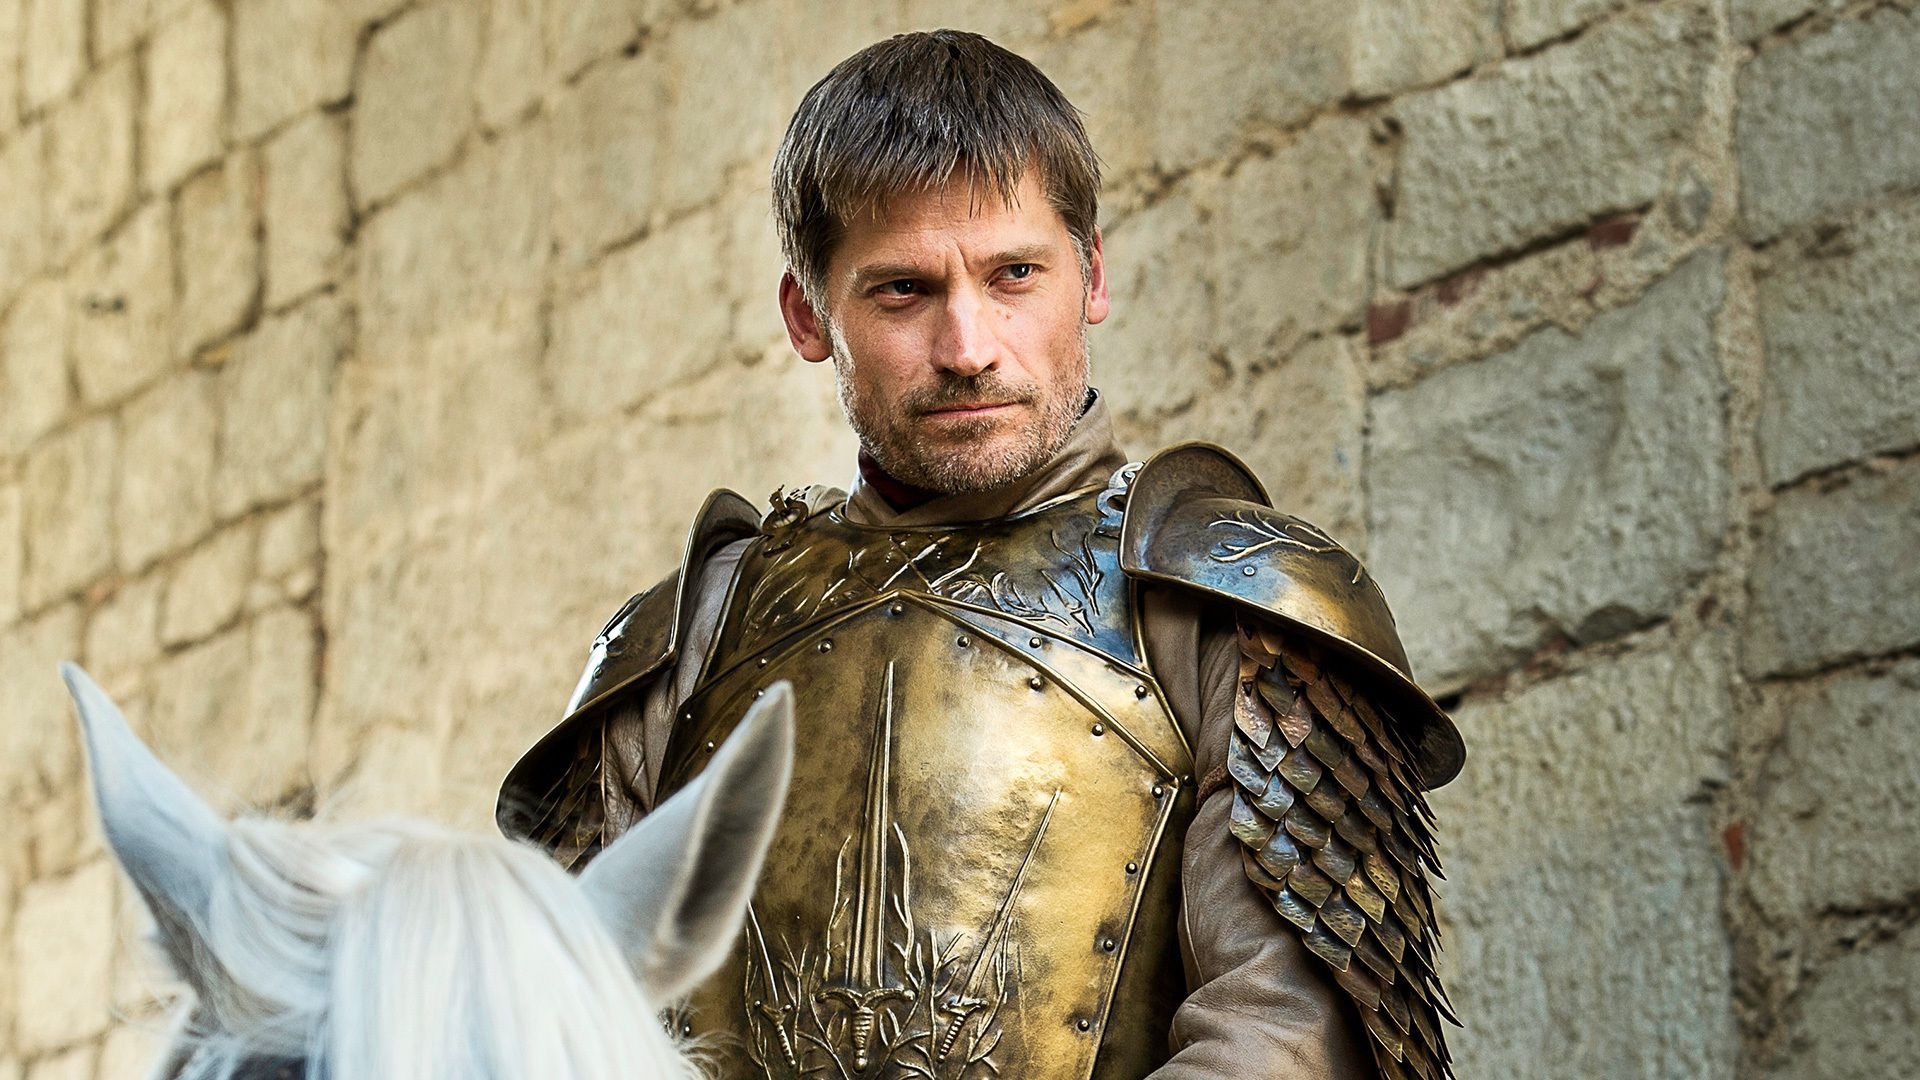 Jaime Lannister, TV show character, Valyrian steel, King's Landing, 1920x1080 Full HD Desktop